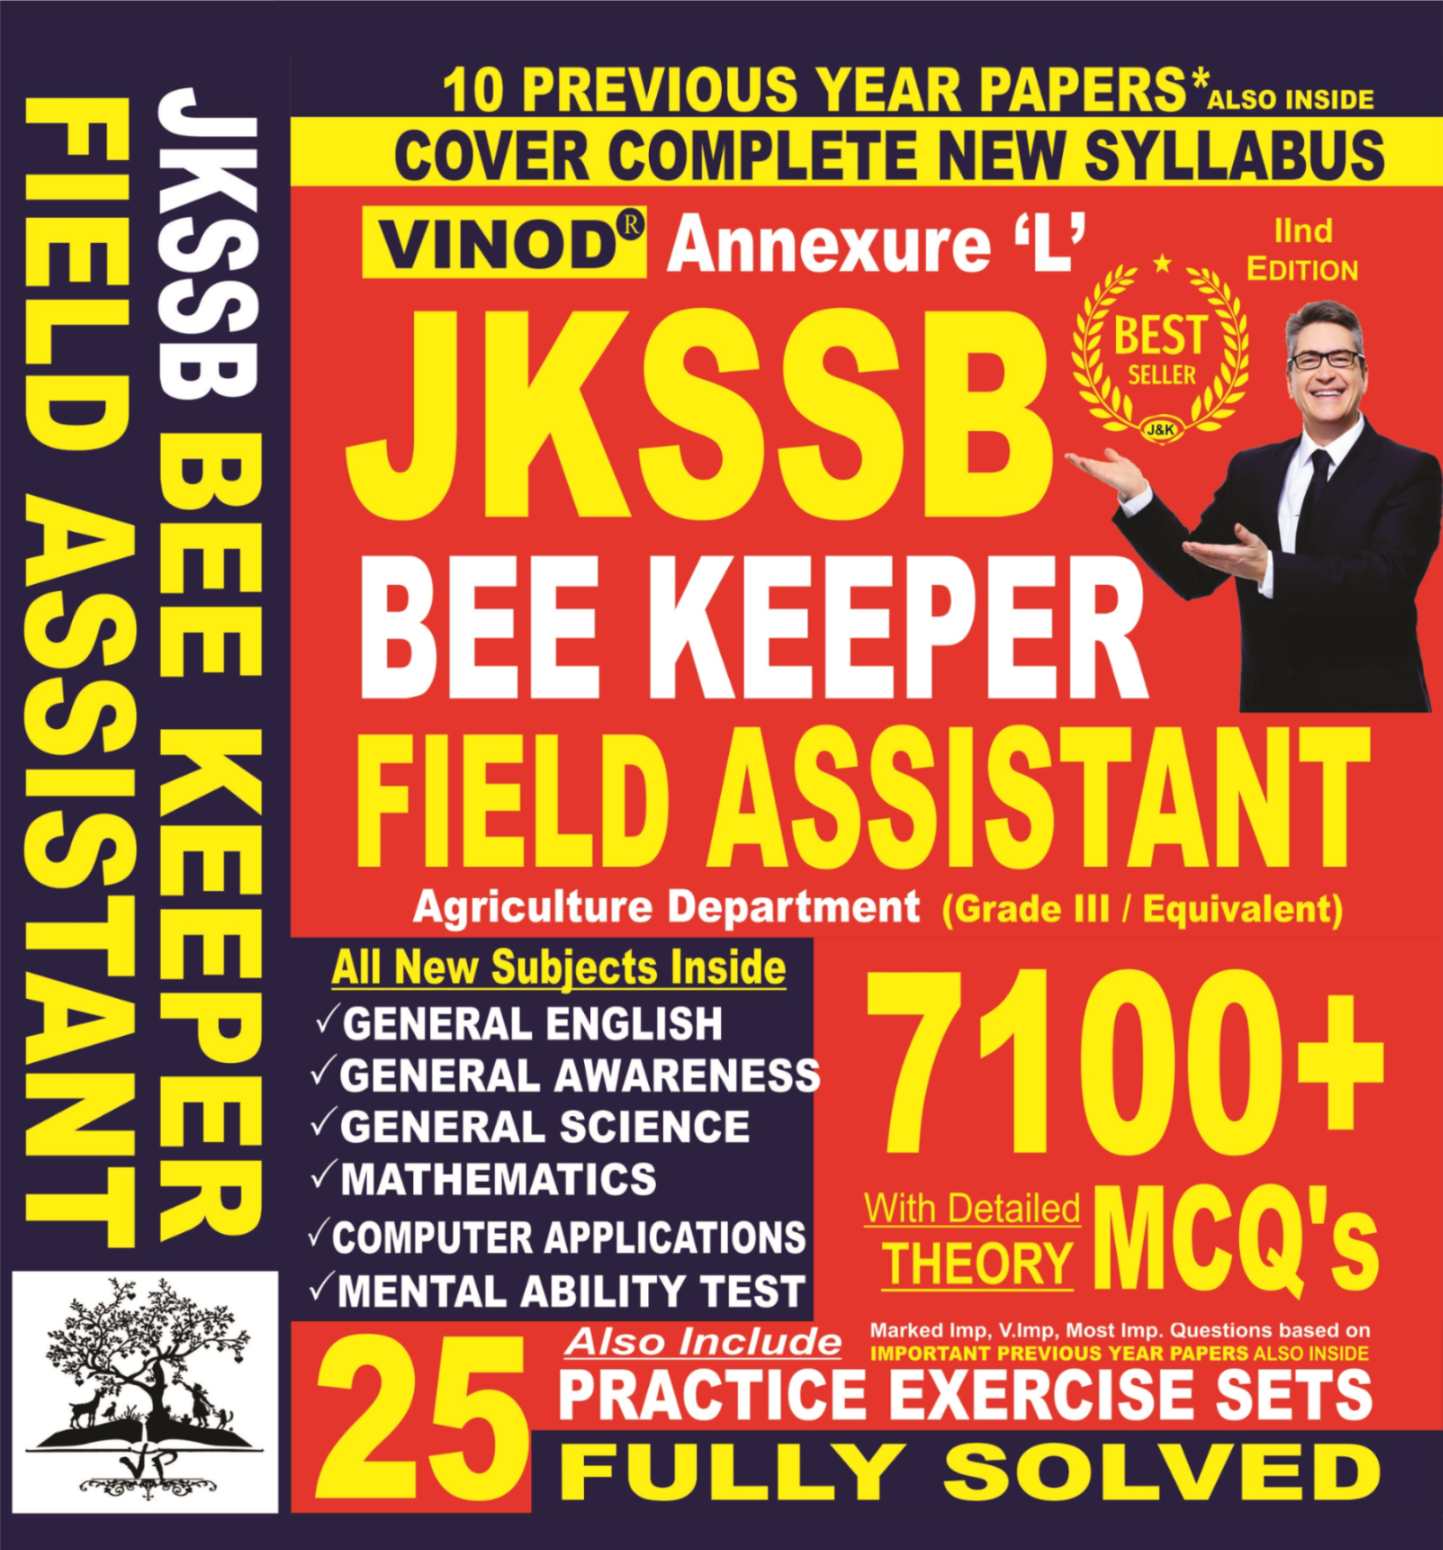 Vinod JKSSB Bee Keeper, Field Assistant Book ; VINOD PUBLICATIONS ; CALL 9218219218